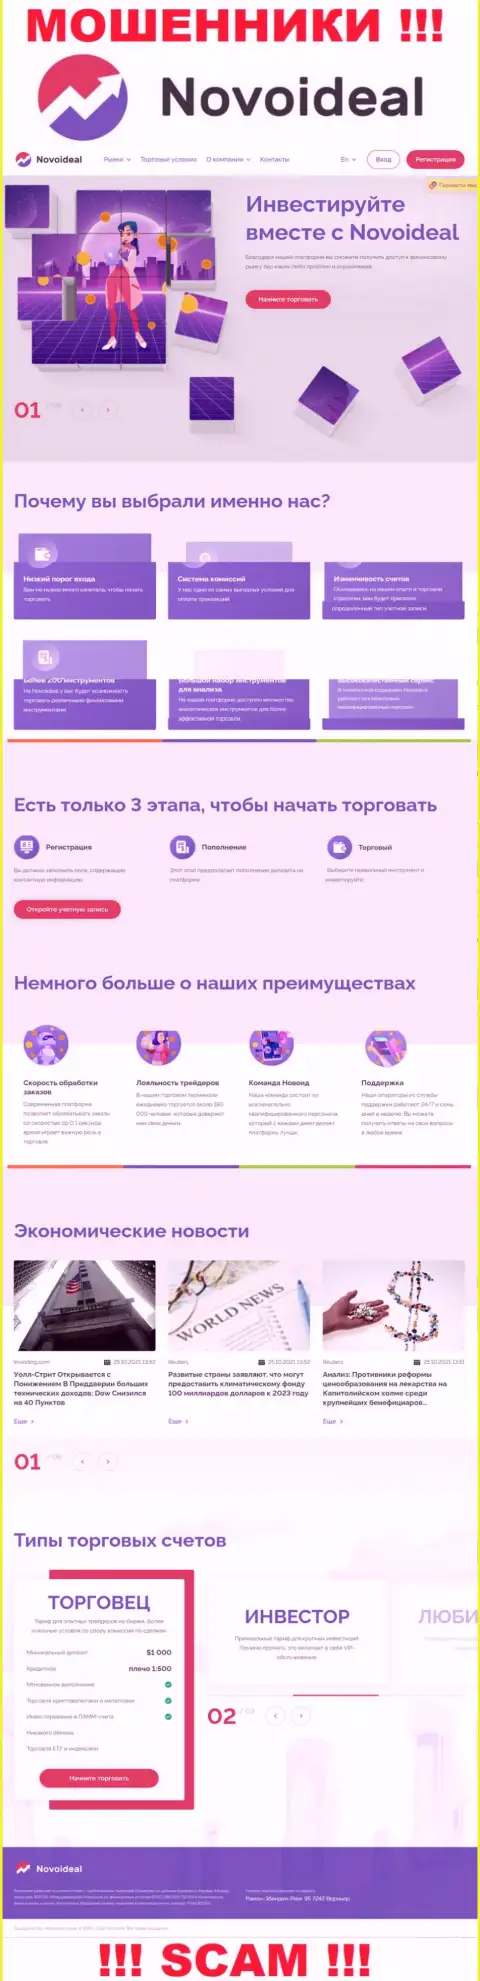 Официальный сайт НовоИдеал Ком это красивая страница для заманухи будущих клиентов